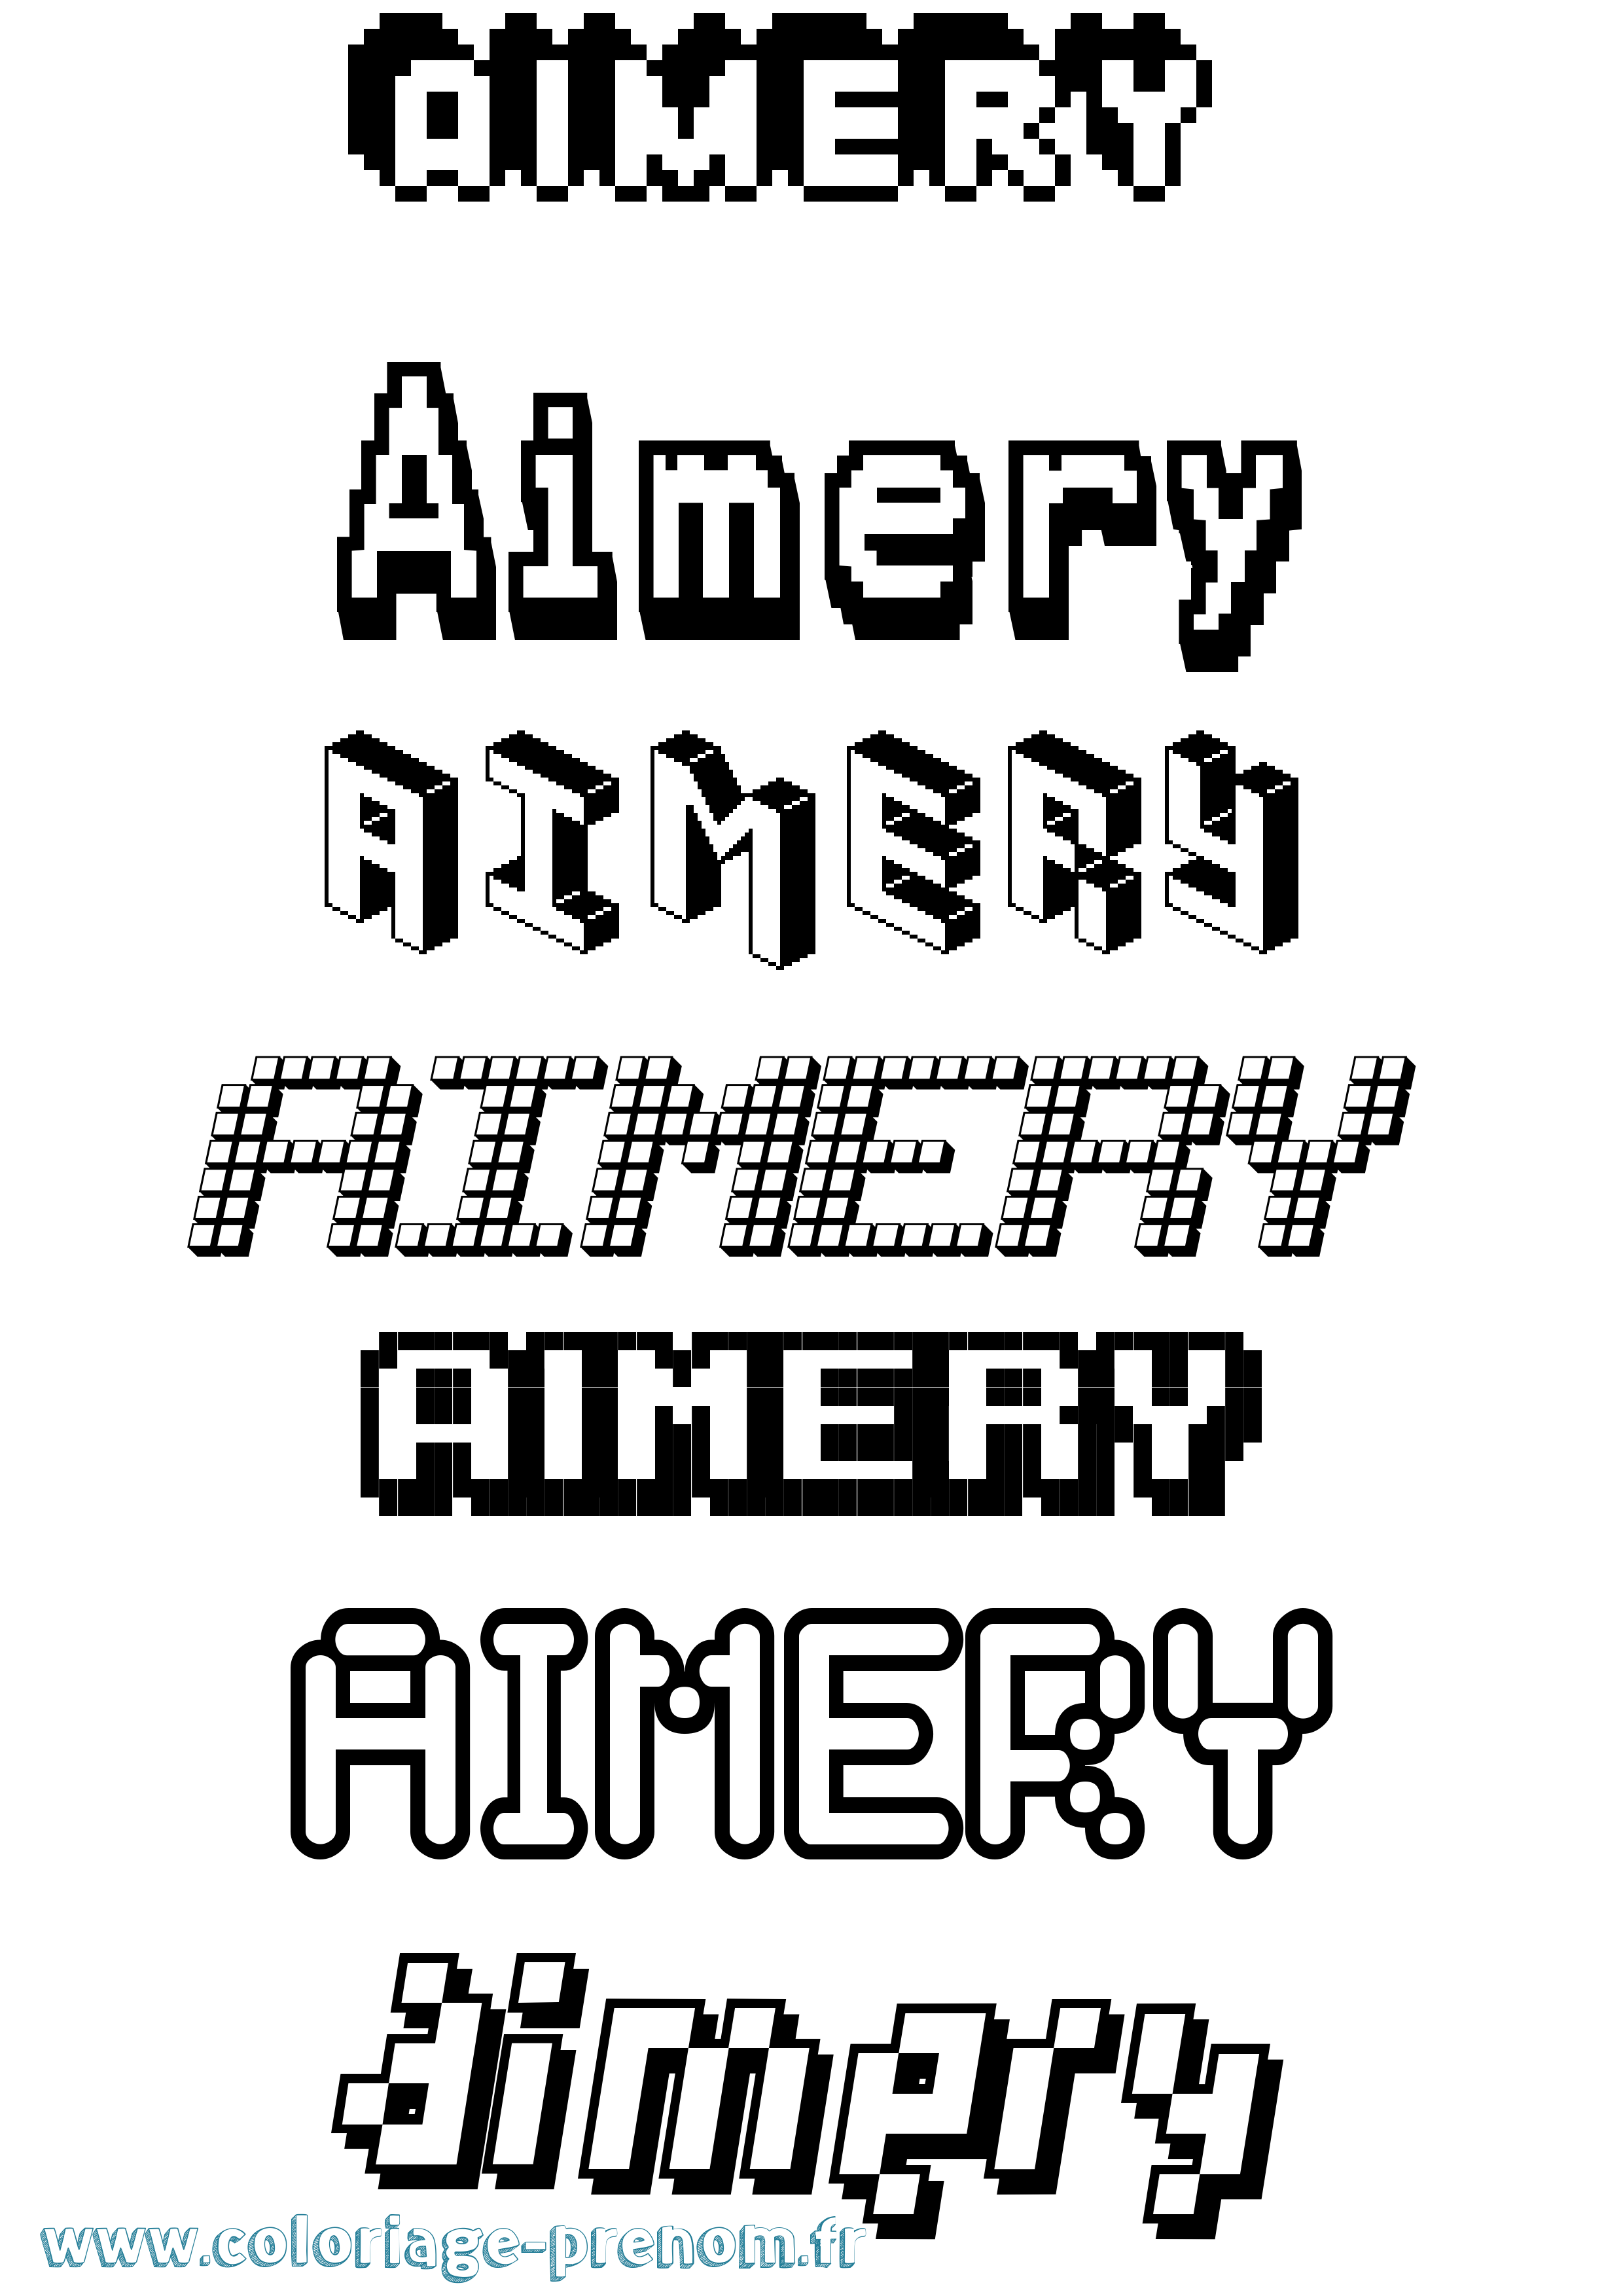 Coloriage prénom Aimery Pixel